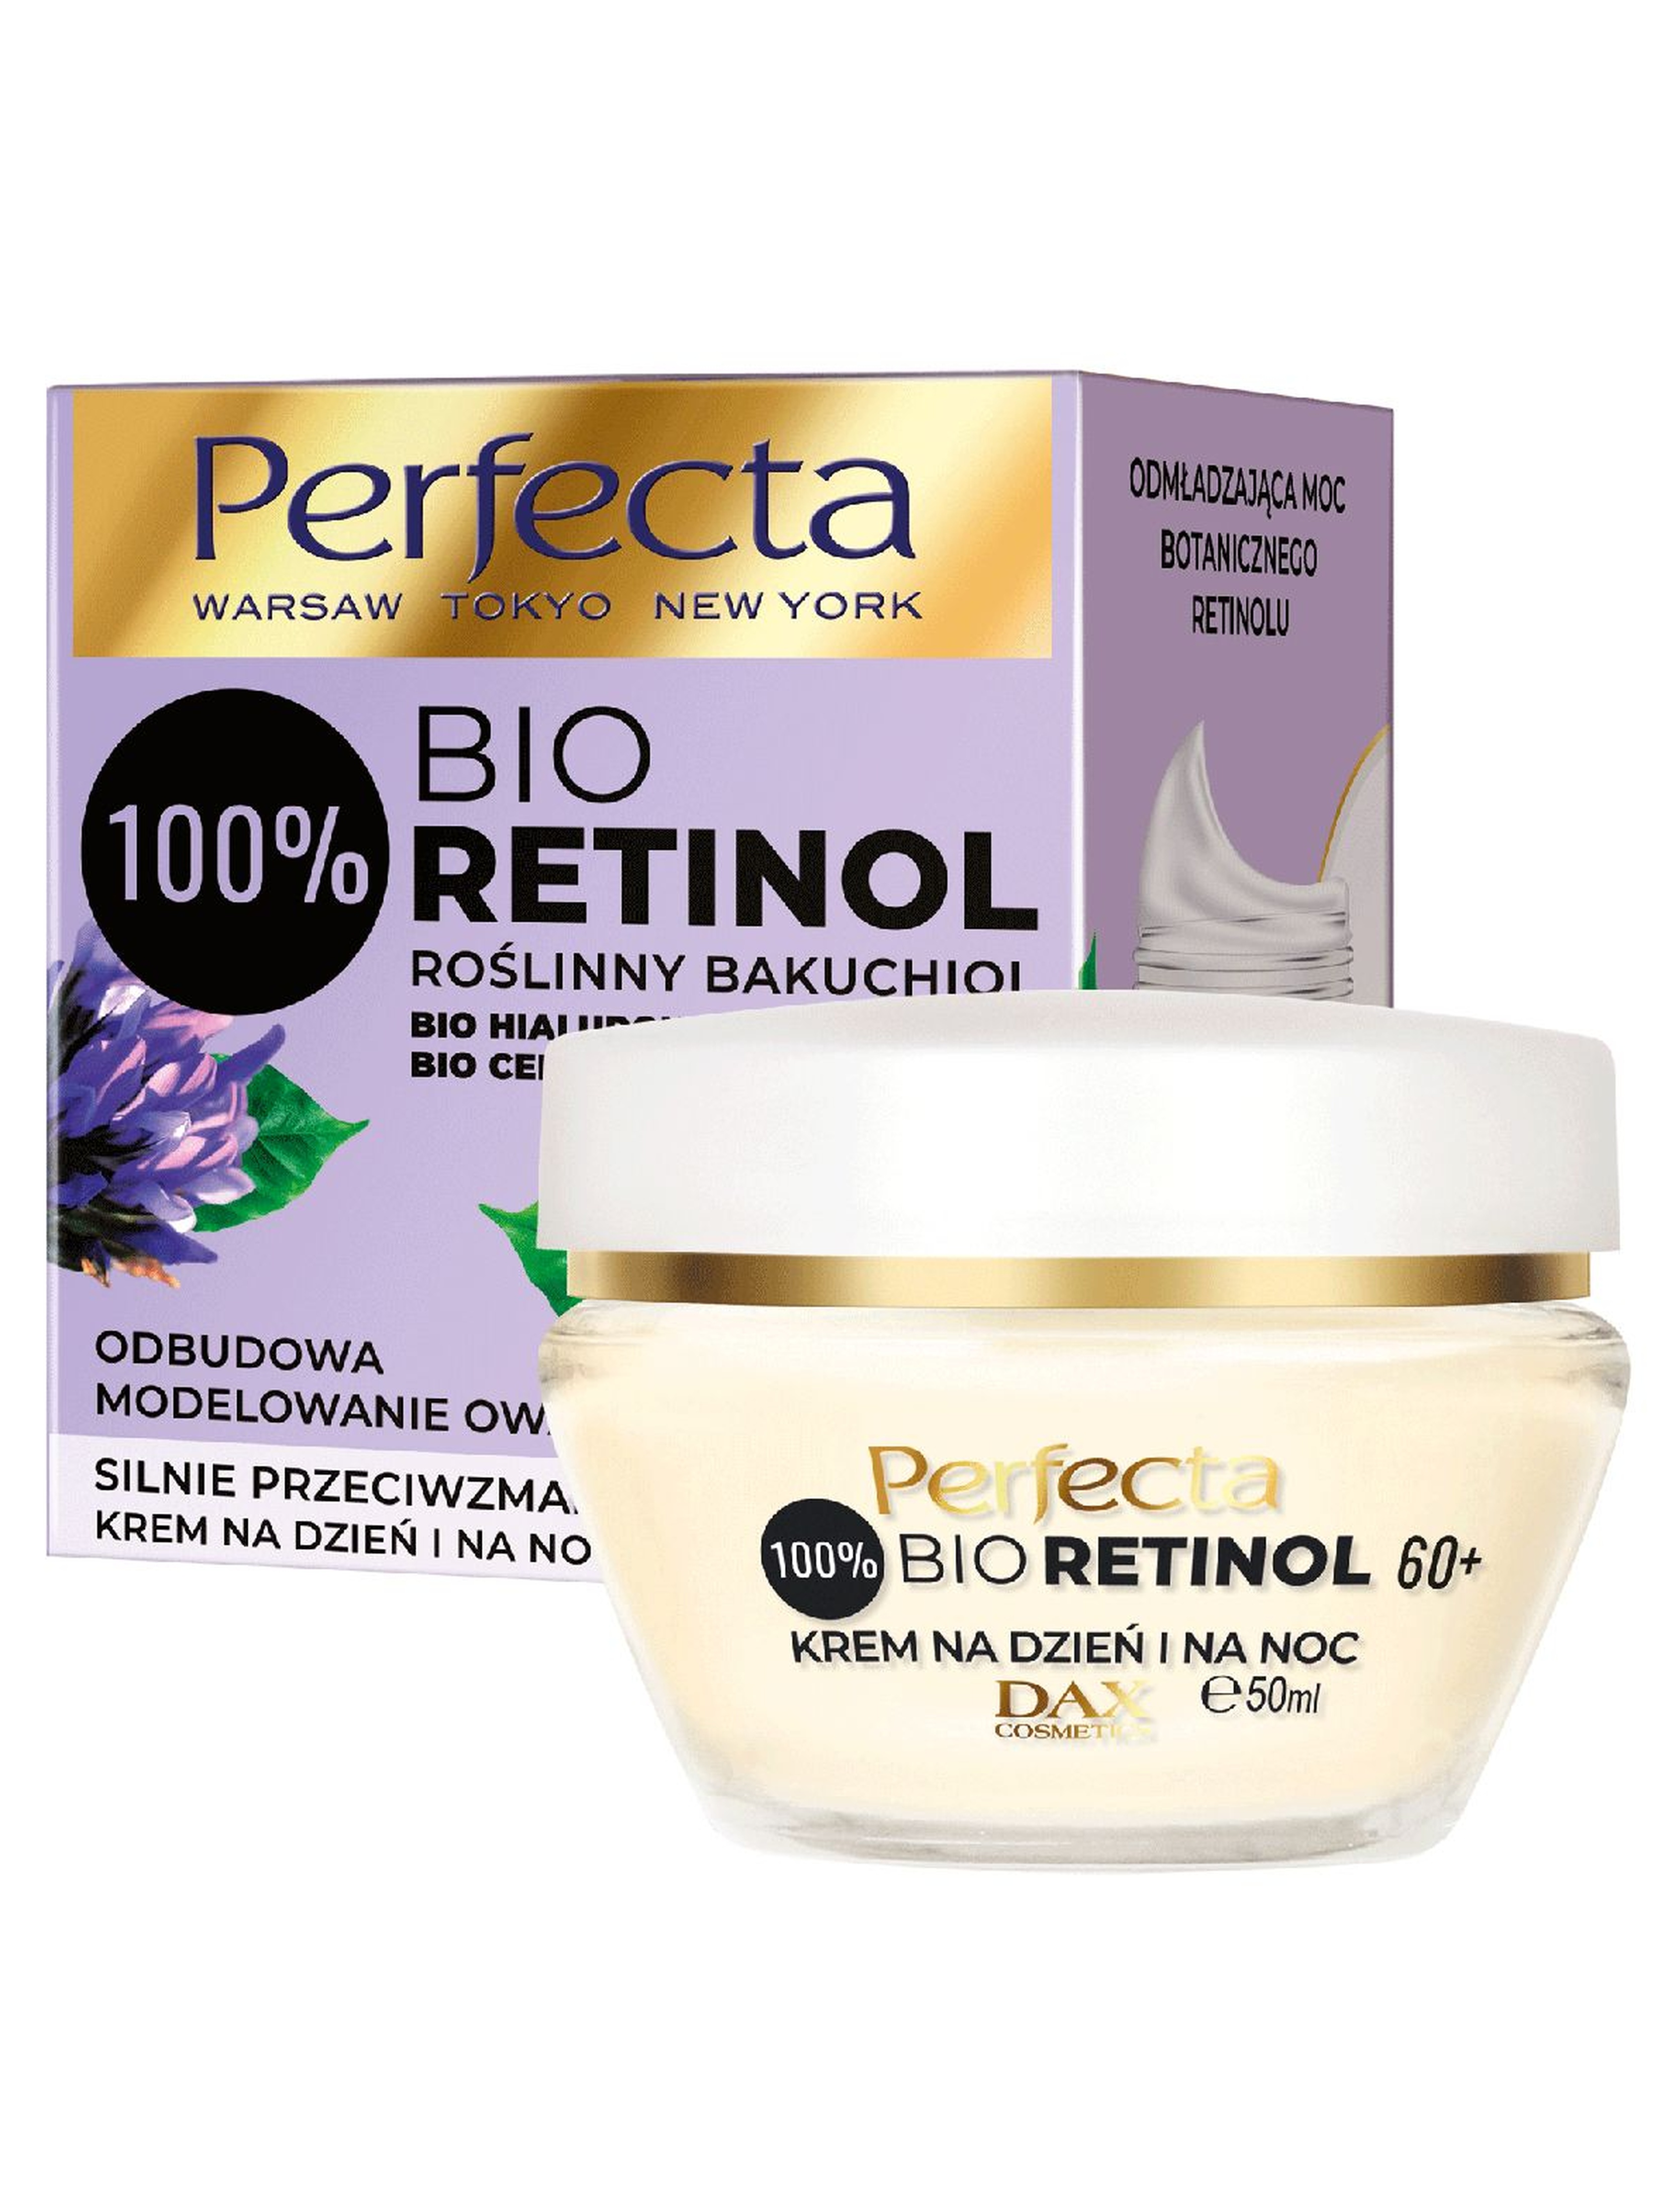 Perfecta Bio Retinol, krem do twarzy na dzień i na noc 60+, 50 ml